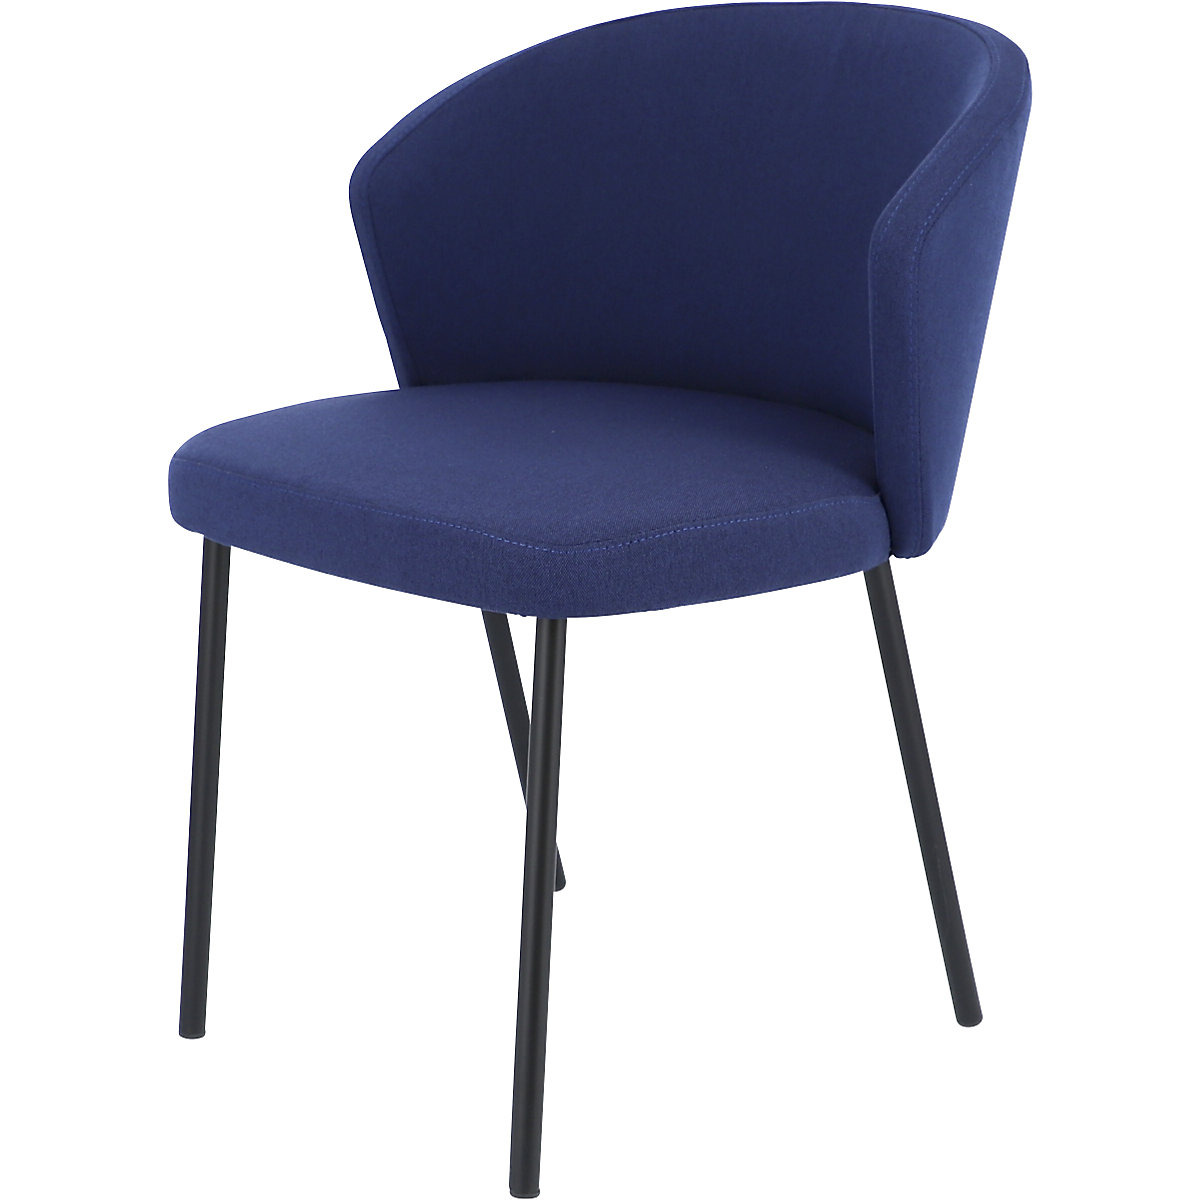 Multifunctionele stoel MILA, frame van staalbuis zwart, blauw-11